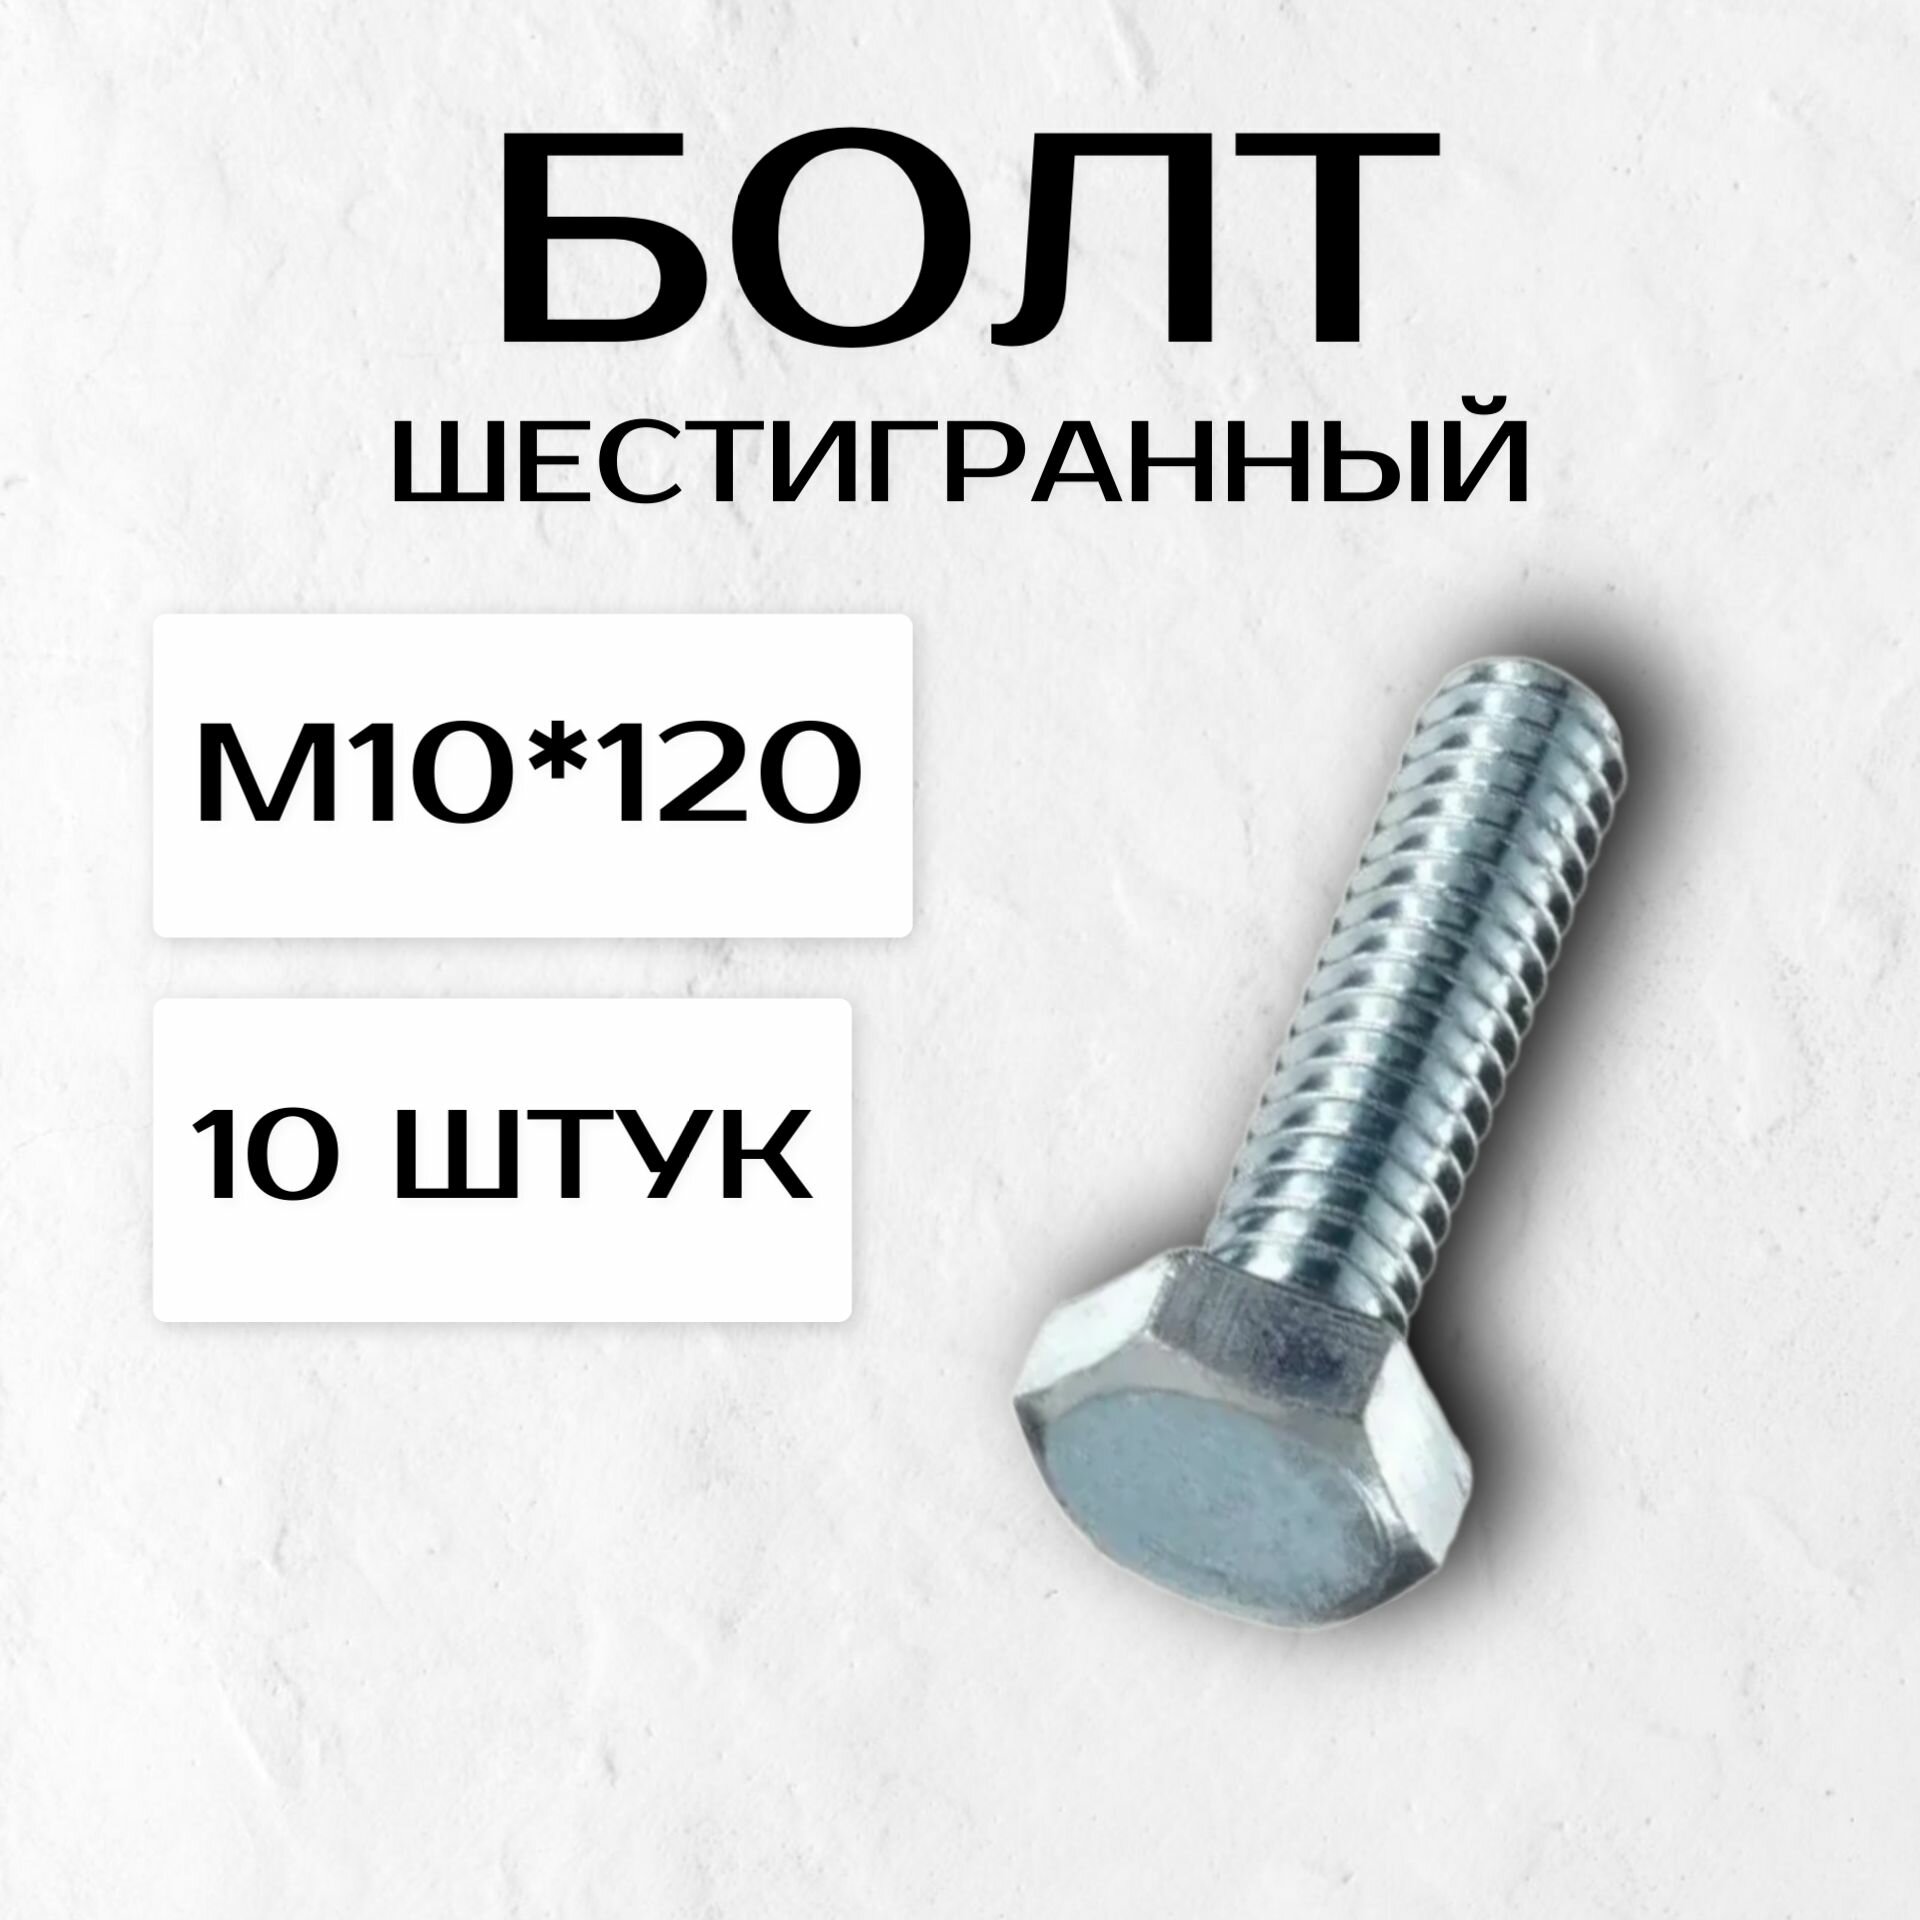 Болт с шестигранной головой М10*120 (10 штук)